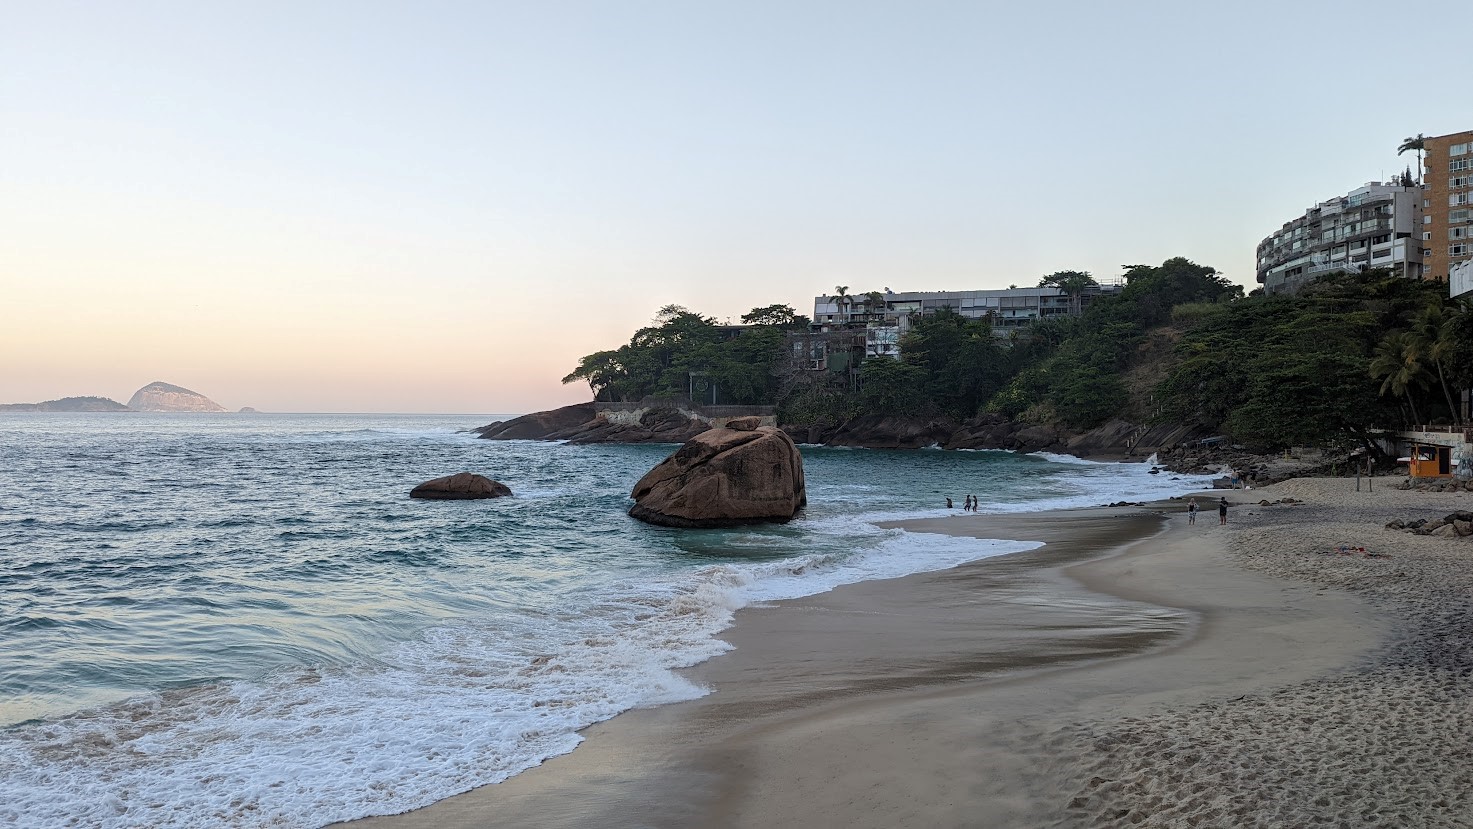  Rio de Janeiro tem algumas das praias mais badaladas do país